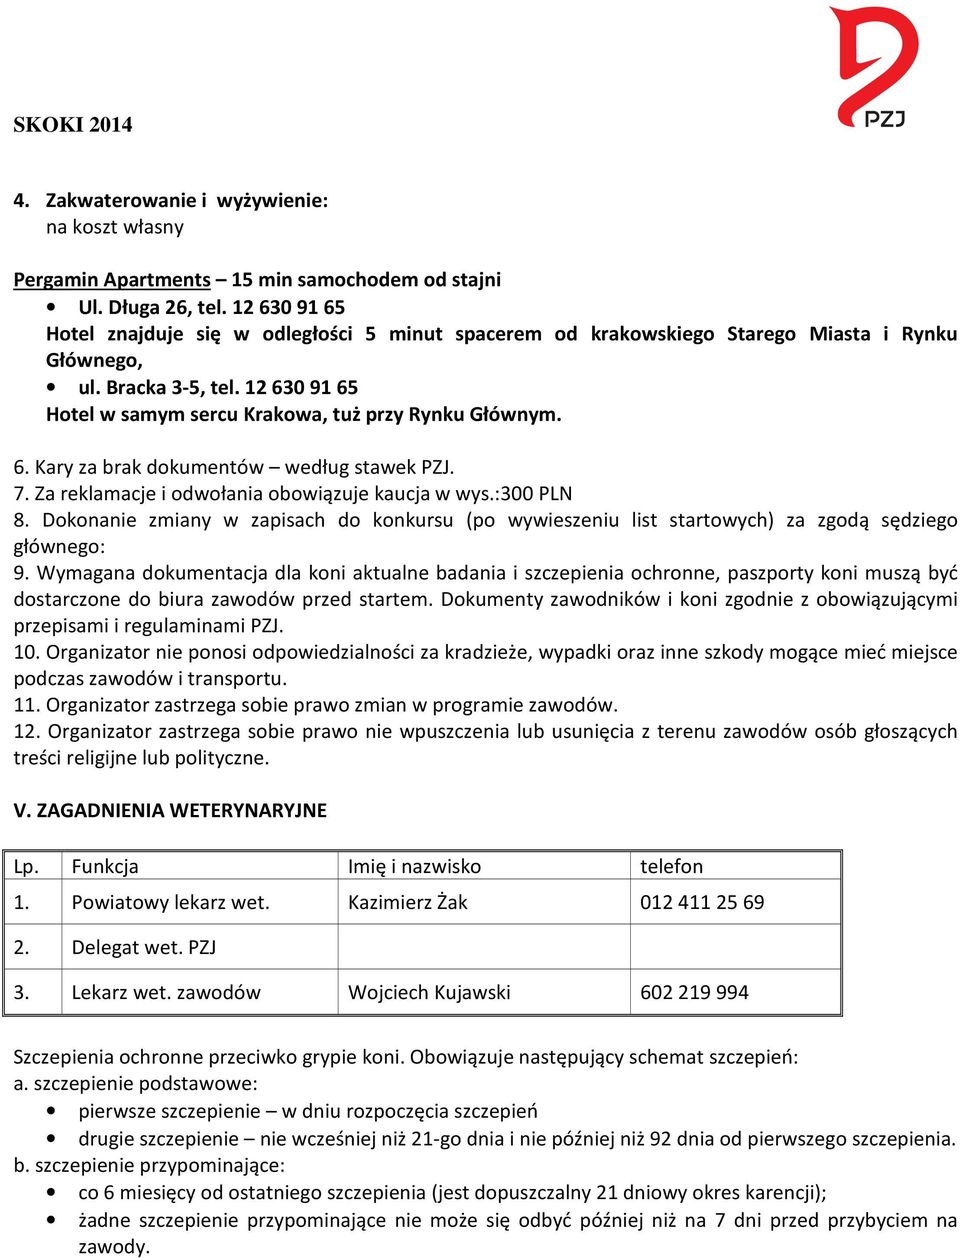 7. Za reklamacje i odwołania obowiązuje kaucja w wys.:300 PLN 8. Dokonanie zmiany w zapisach do konkursu (po wywieszeniu list startowych) za zgodą sędziego głównego: 9.